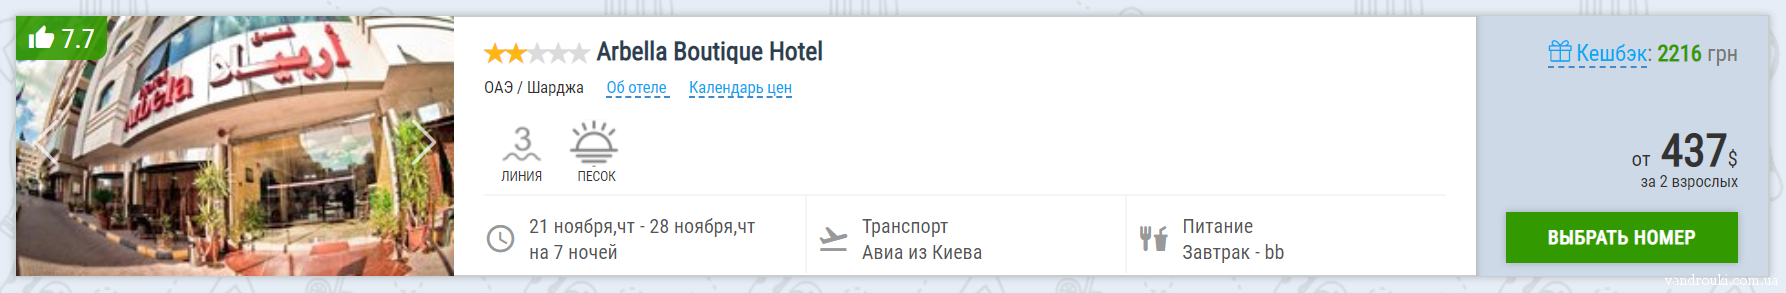 Горящий тур из Киева в ОАЭ всего за 197€ с человека! Завтраки и в цене